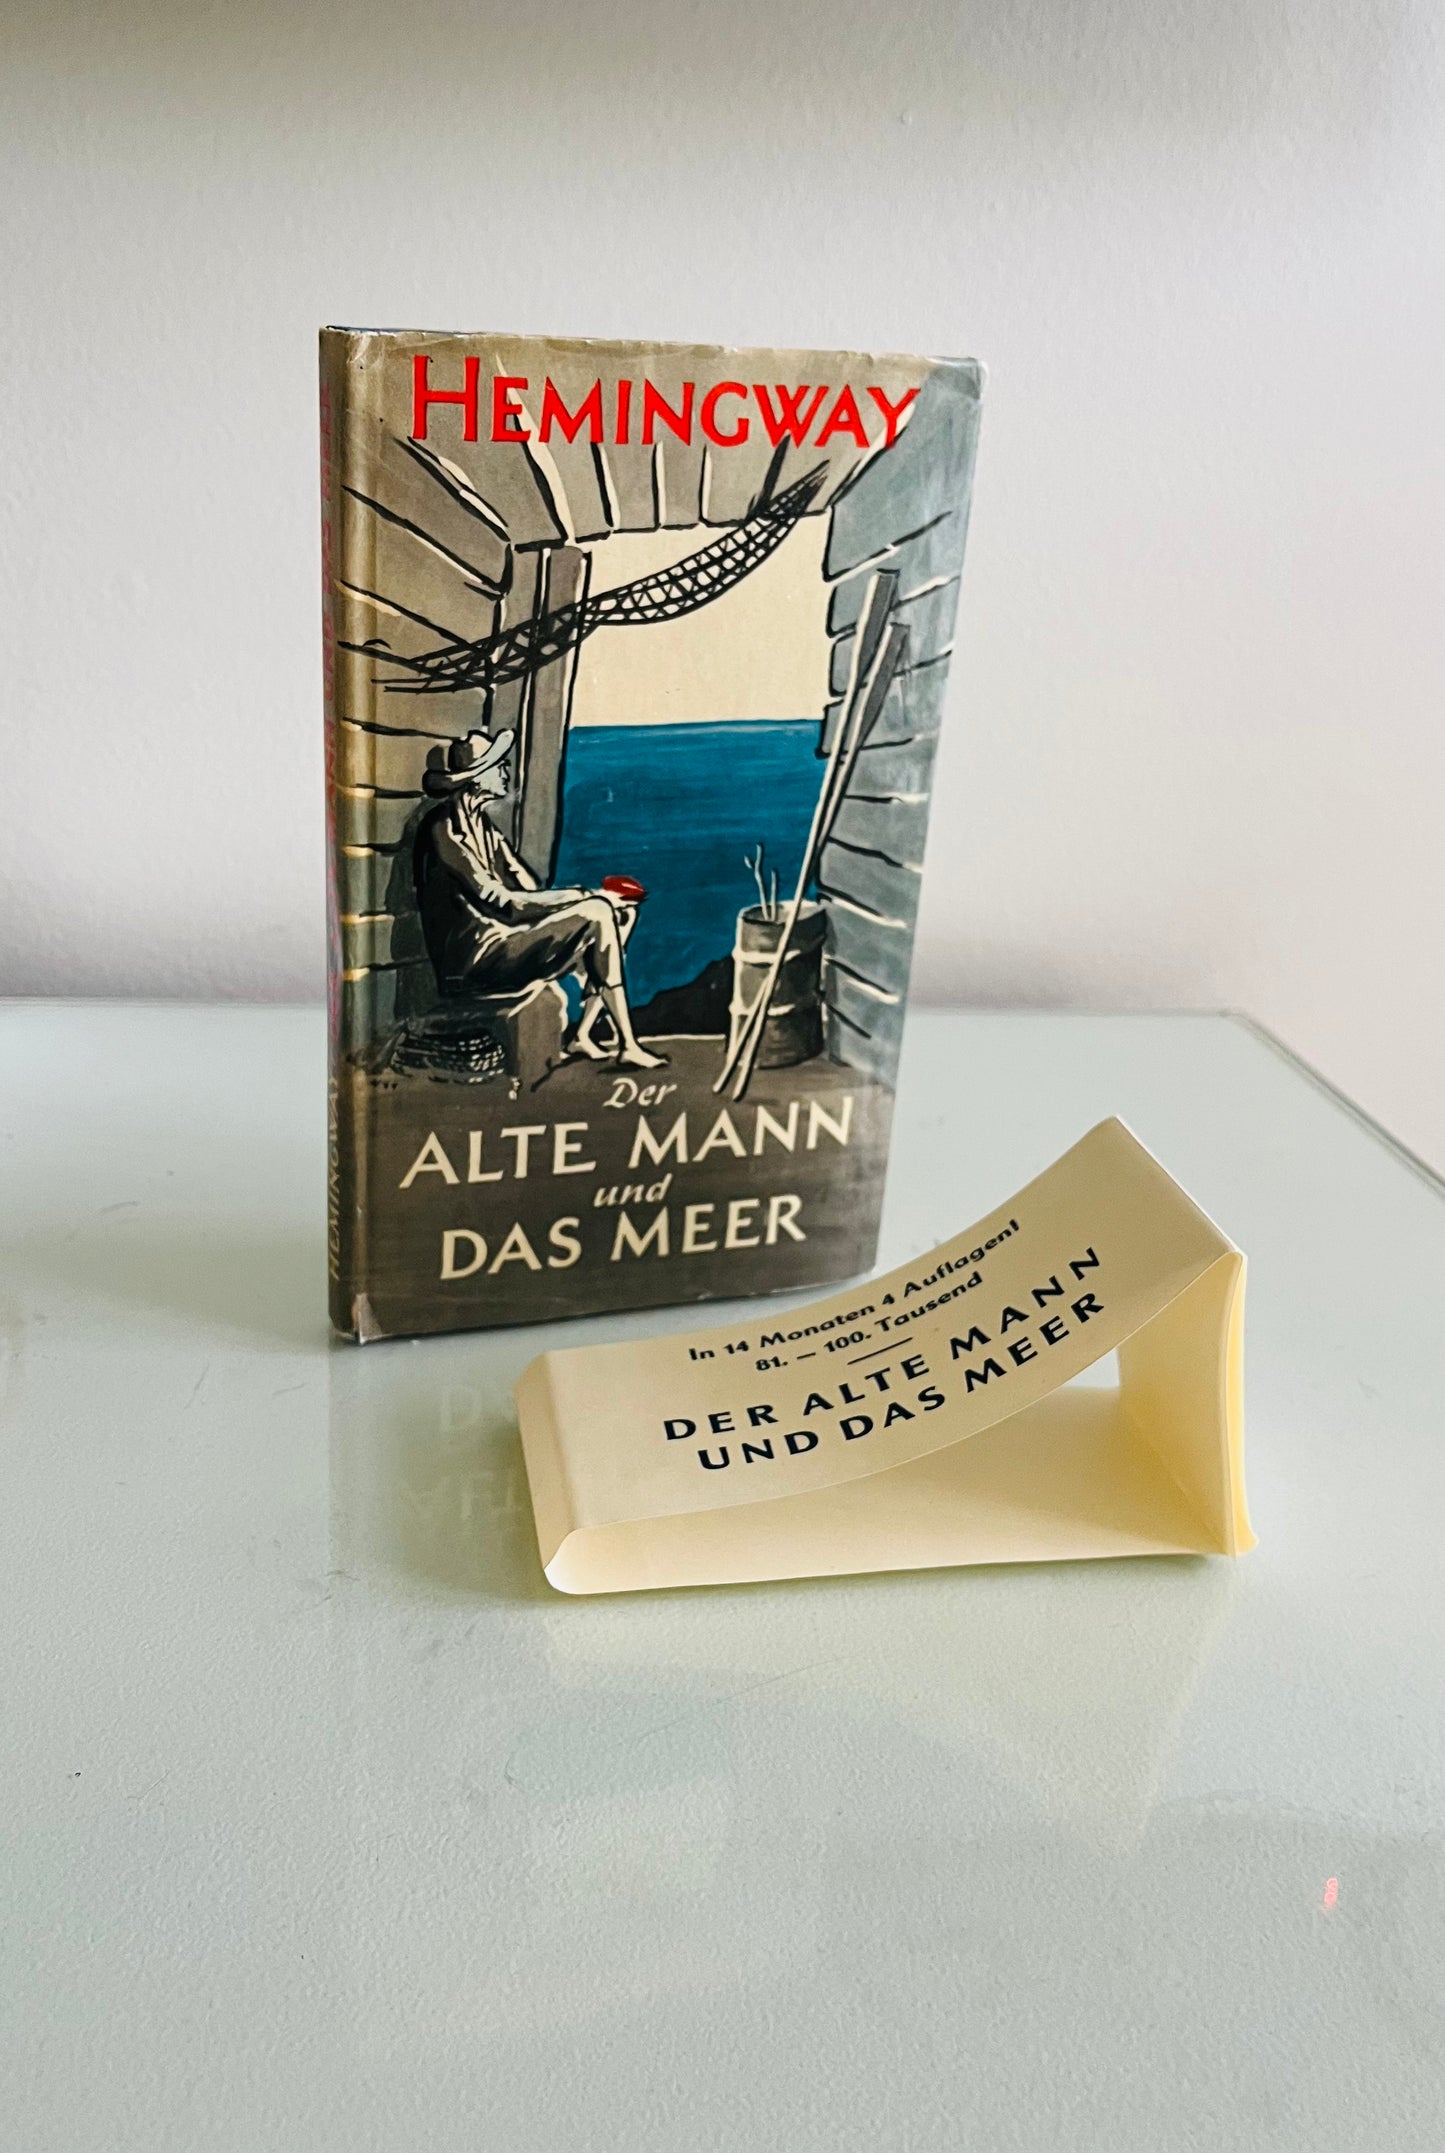 Der Alte Mann Und Das Meer (The Old Man and the Sea)